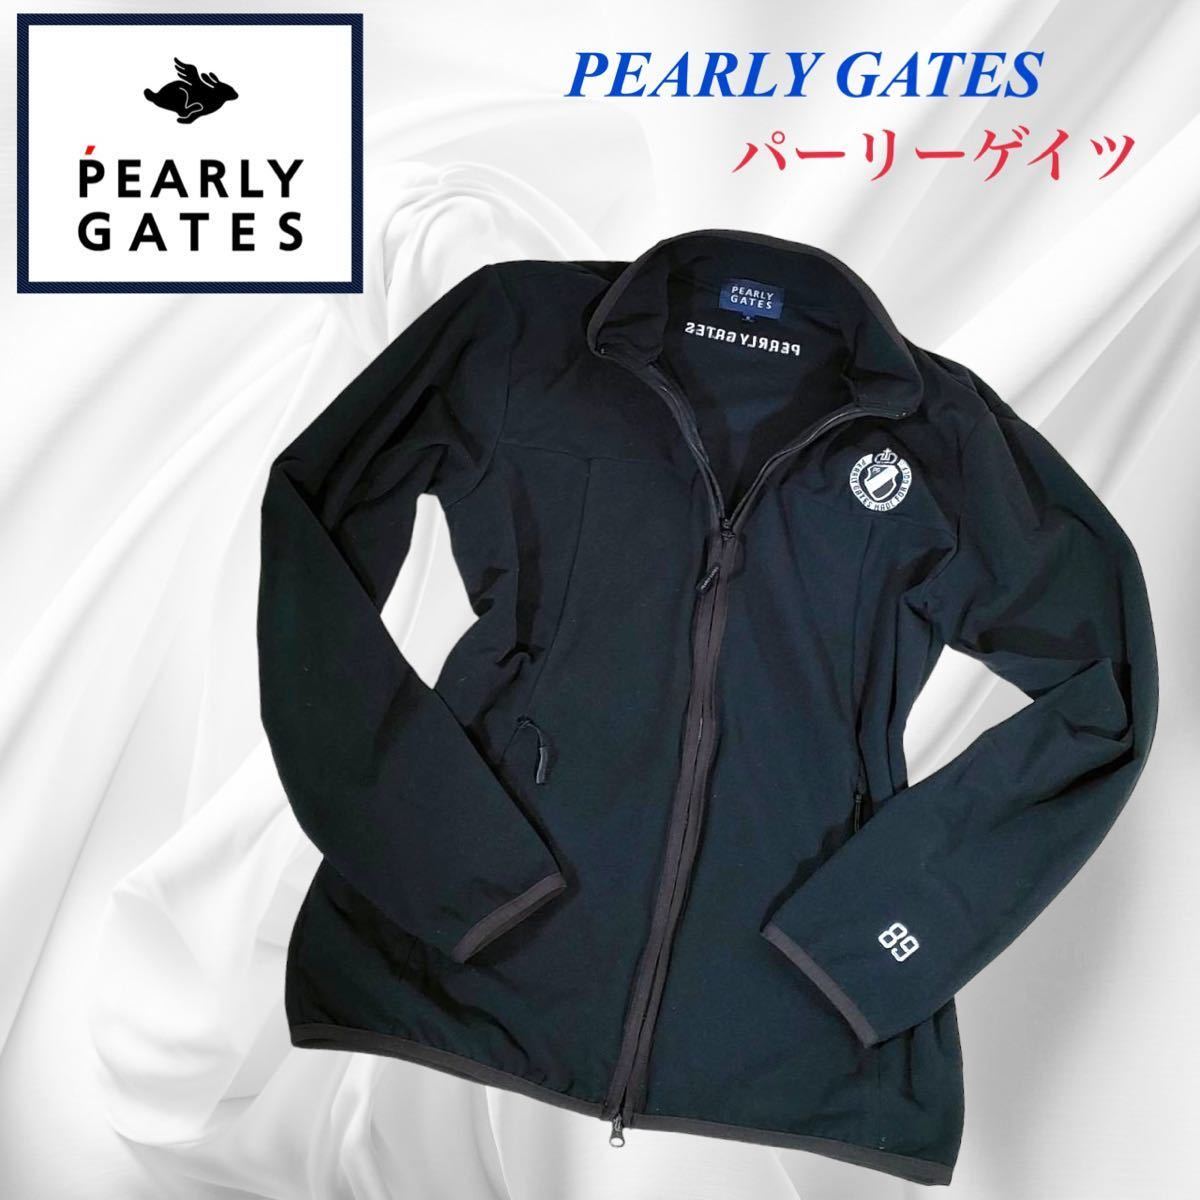 PEARLY GATES パーリーゲイツ フリース ジップアップジャケット サイズ5 (XL相当)ゴルフウェア メンズ 軽量 極暖_画像1